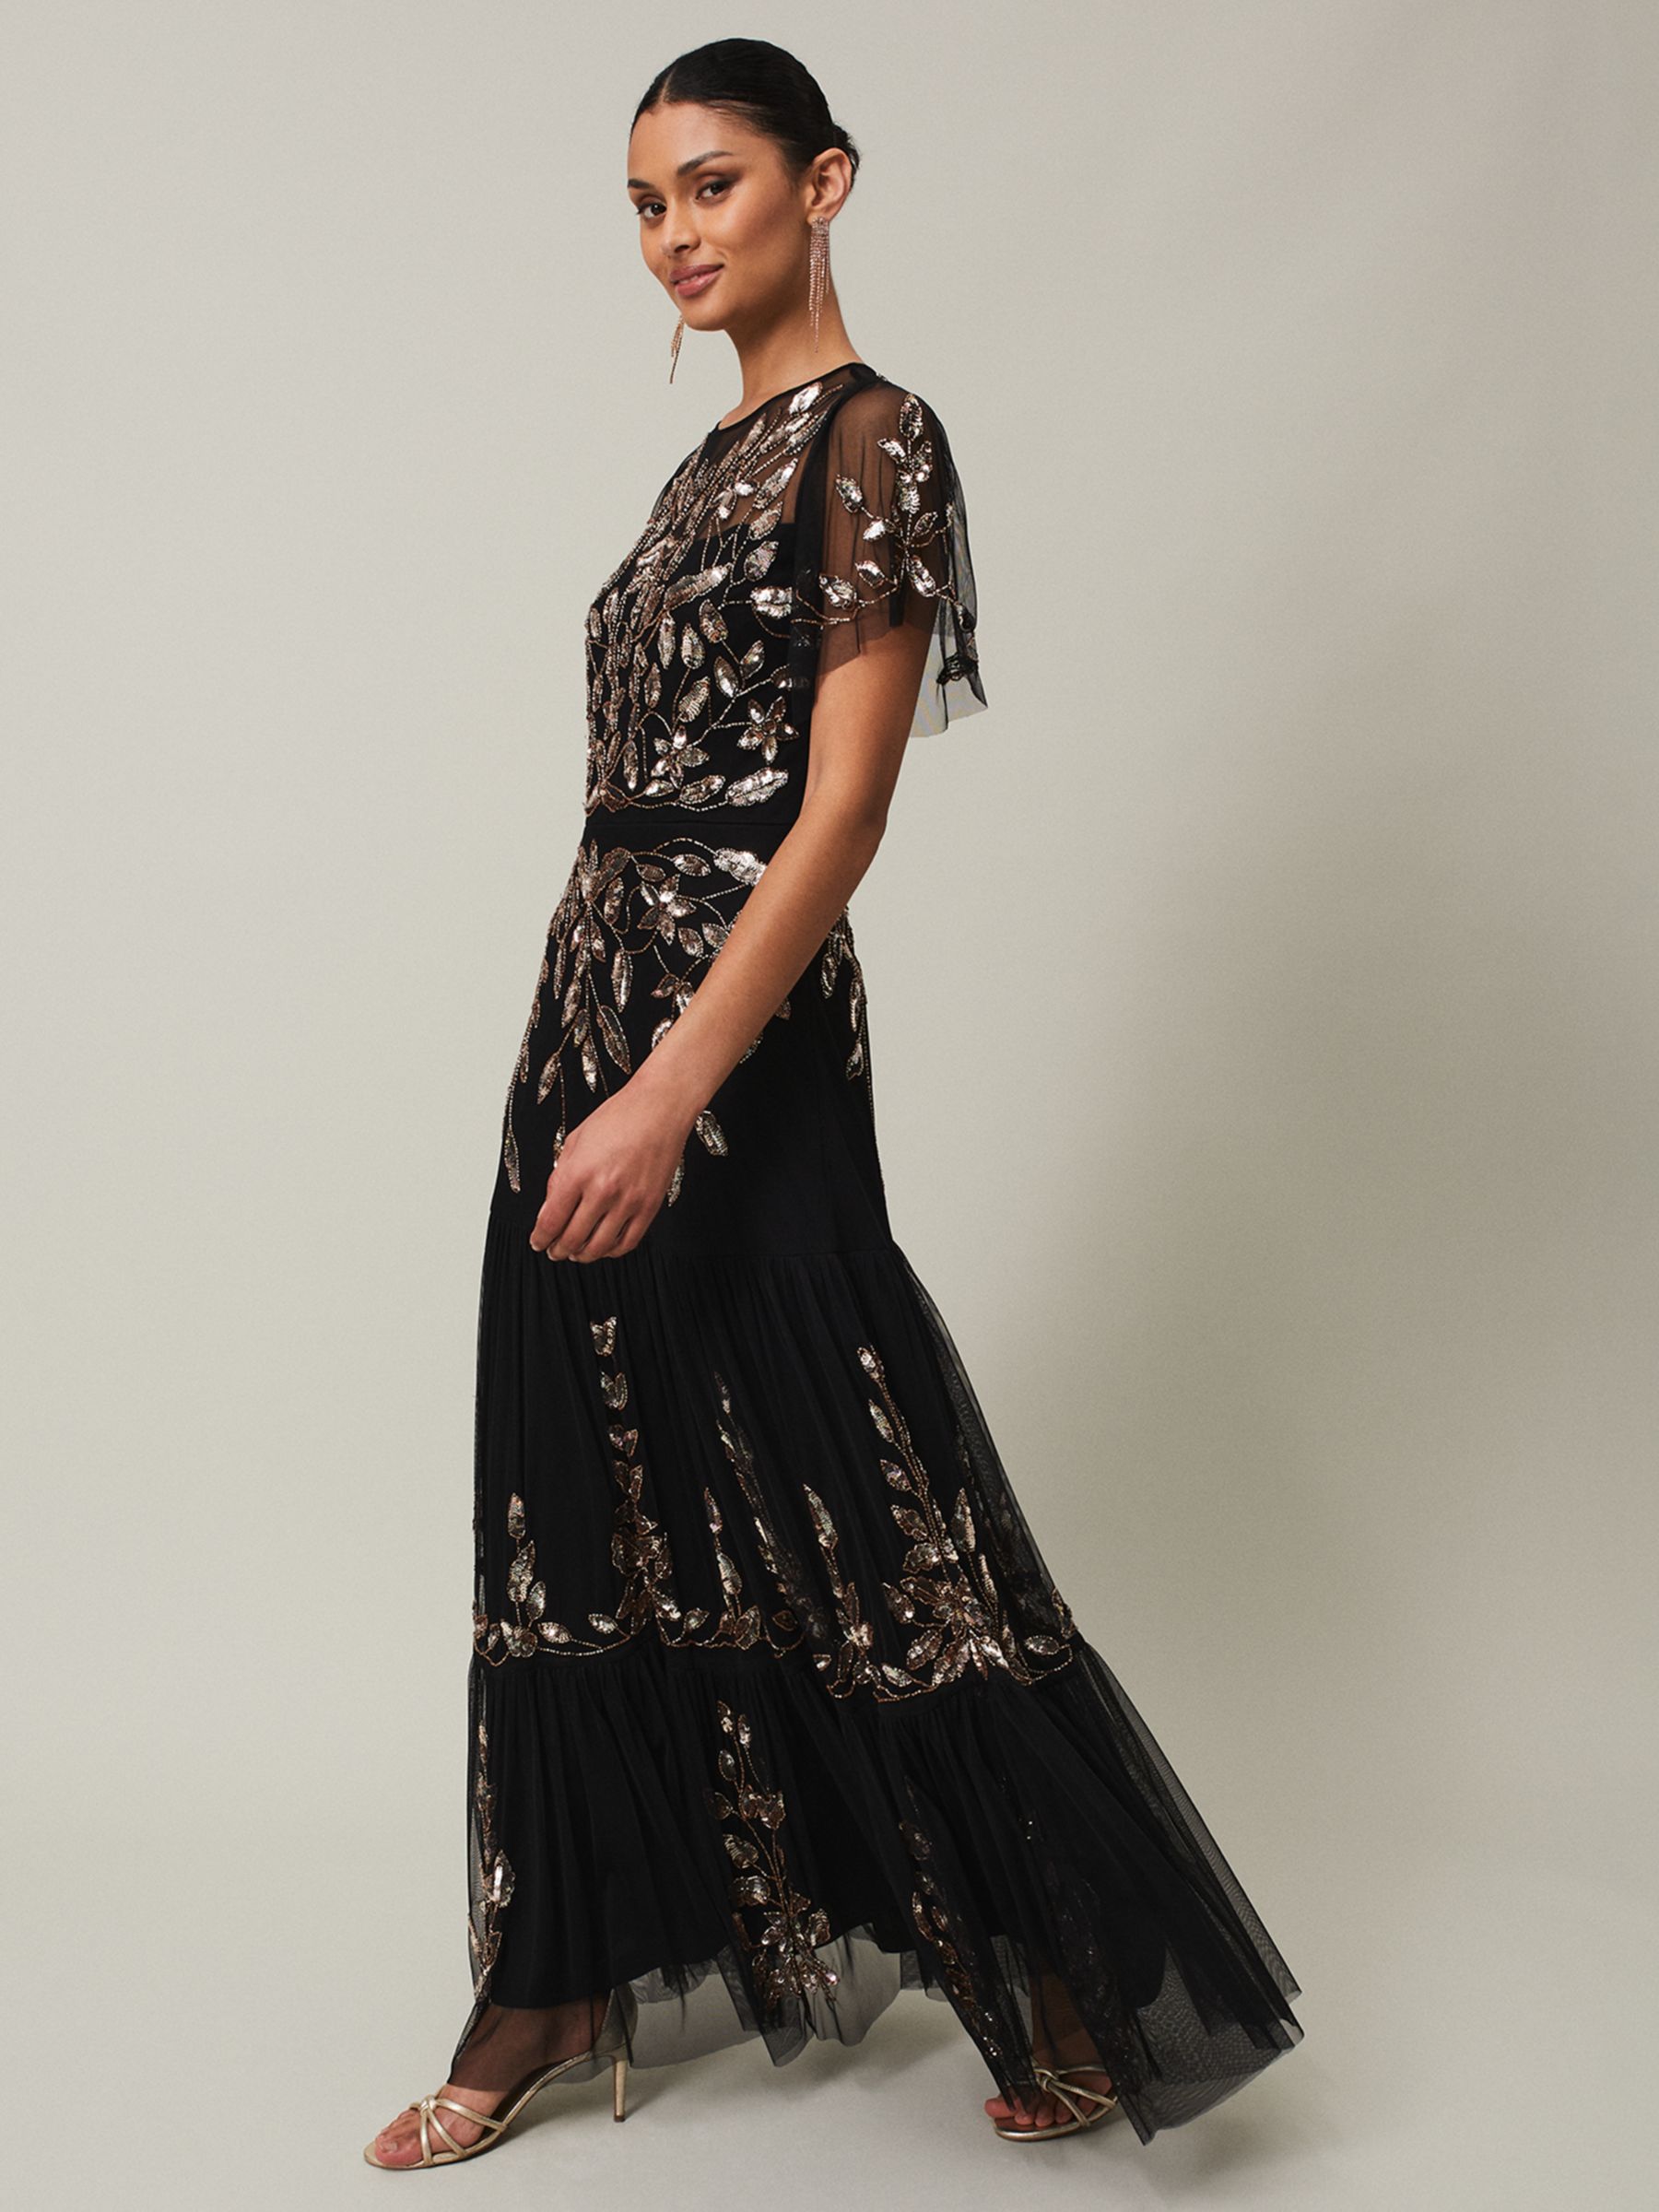 Phase Eight Hilary Leaf Embellished Maxi Dress, Black/Bronze, 26